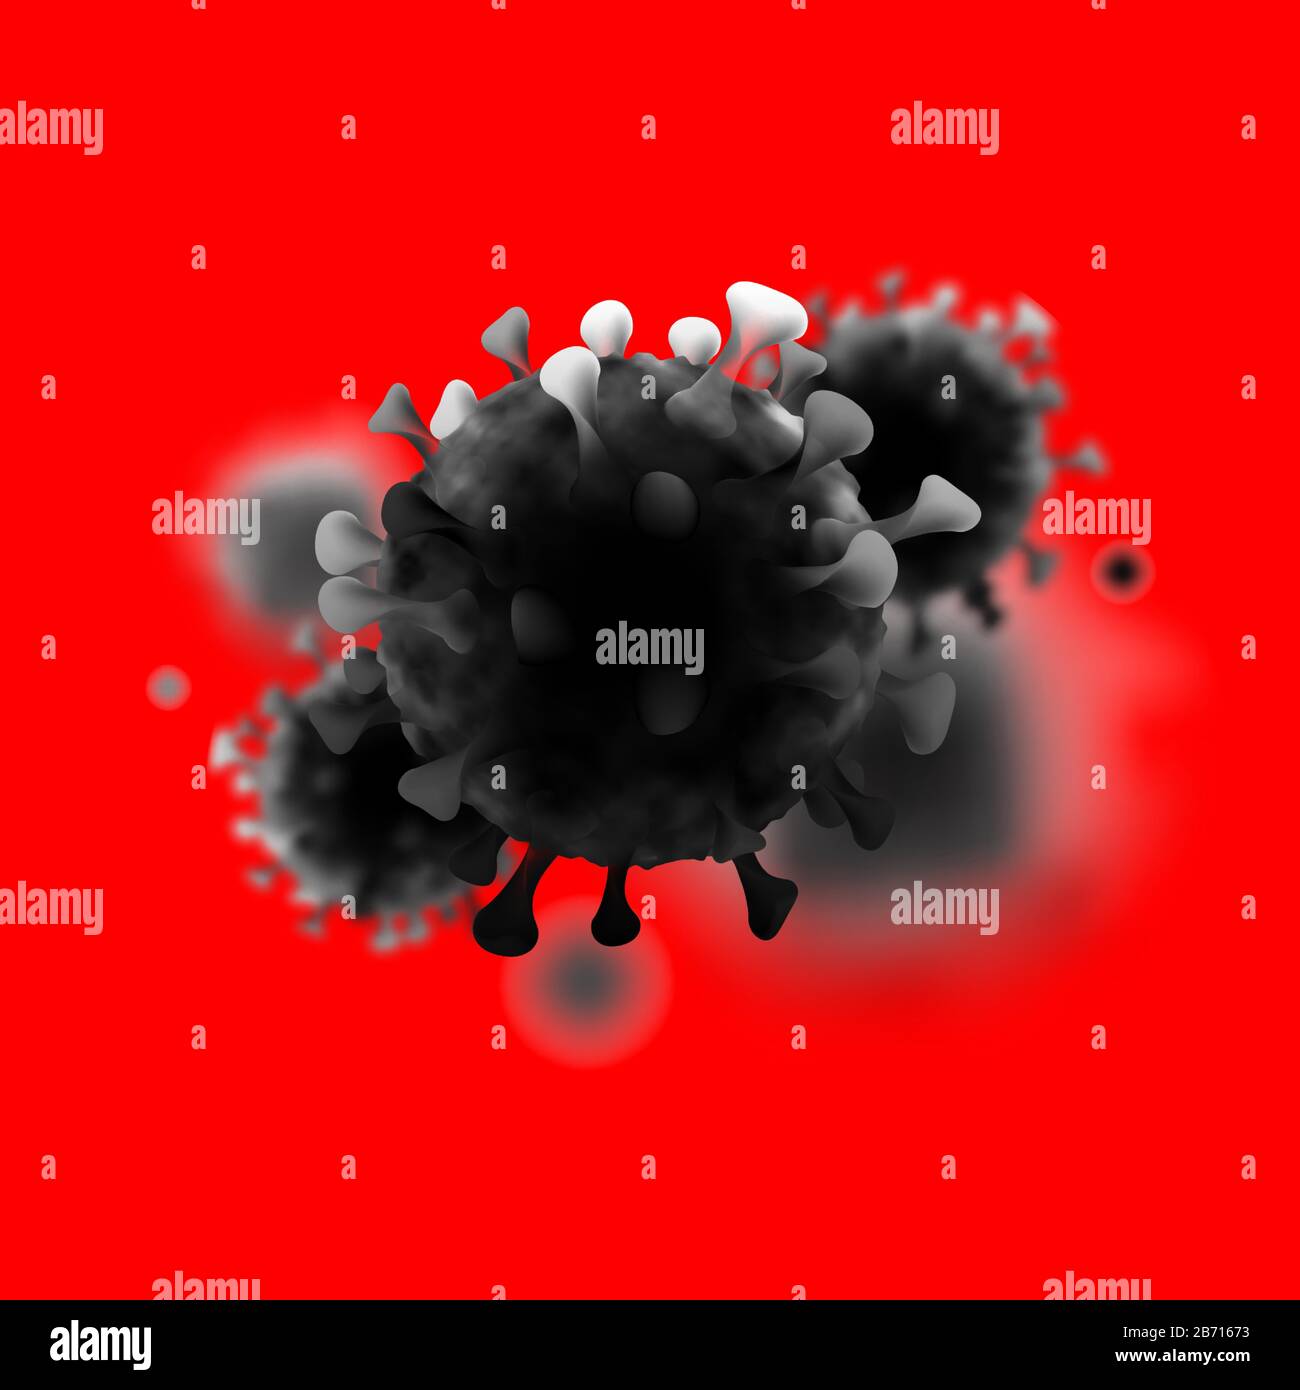 COVID-19 coronavirus chinois au microscope. Illustration vectorielle 3D réaliste. Pandémie, maladie. Grippe respiratoire pathogène flottante en Chine Illustration de Vecteur